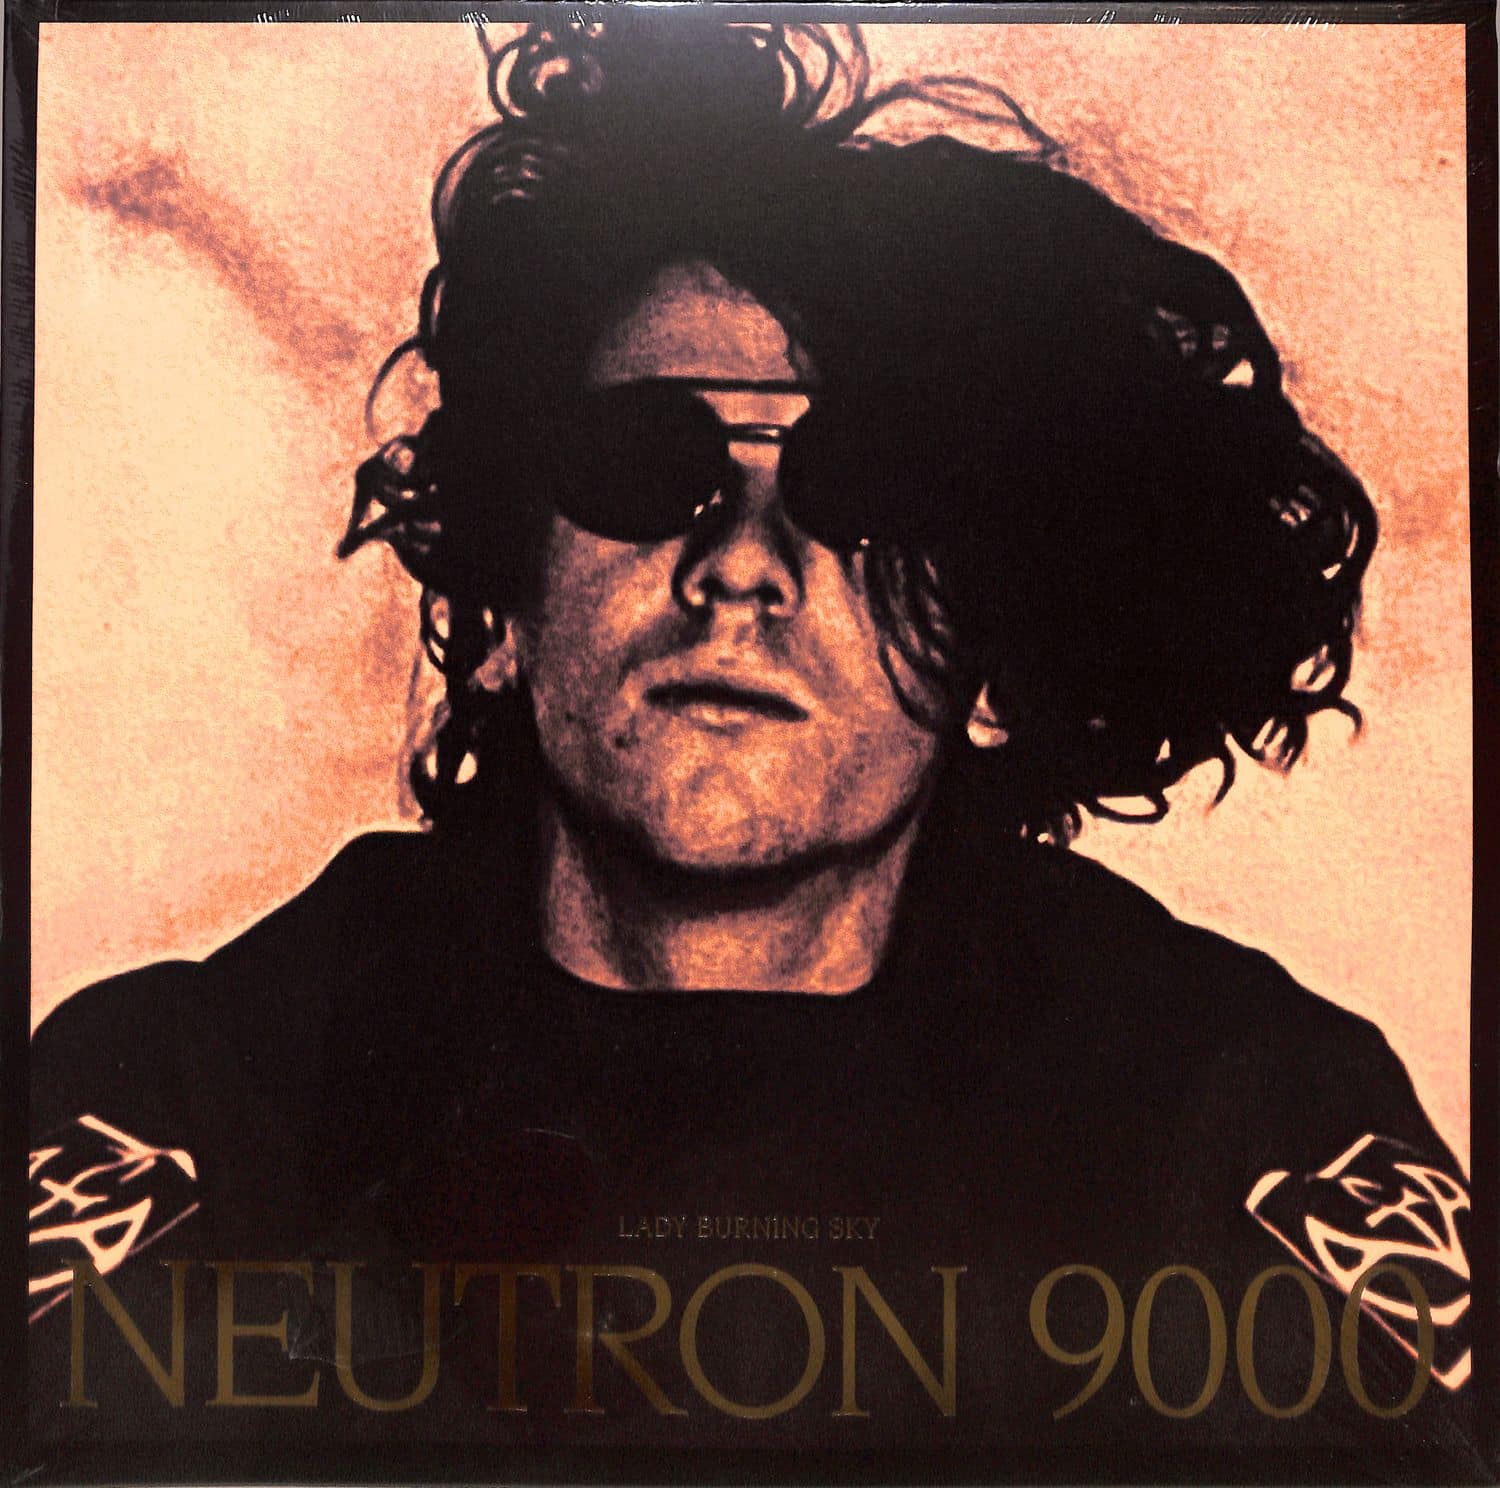 Neutron 9000 - LADY BURNING SKY 